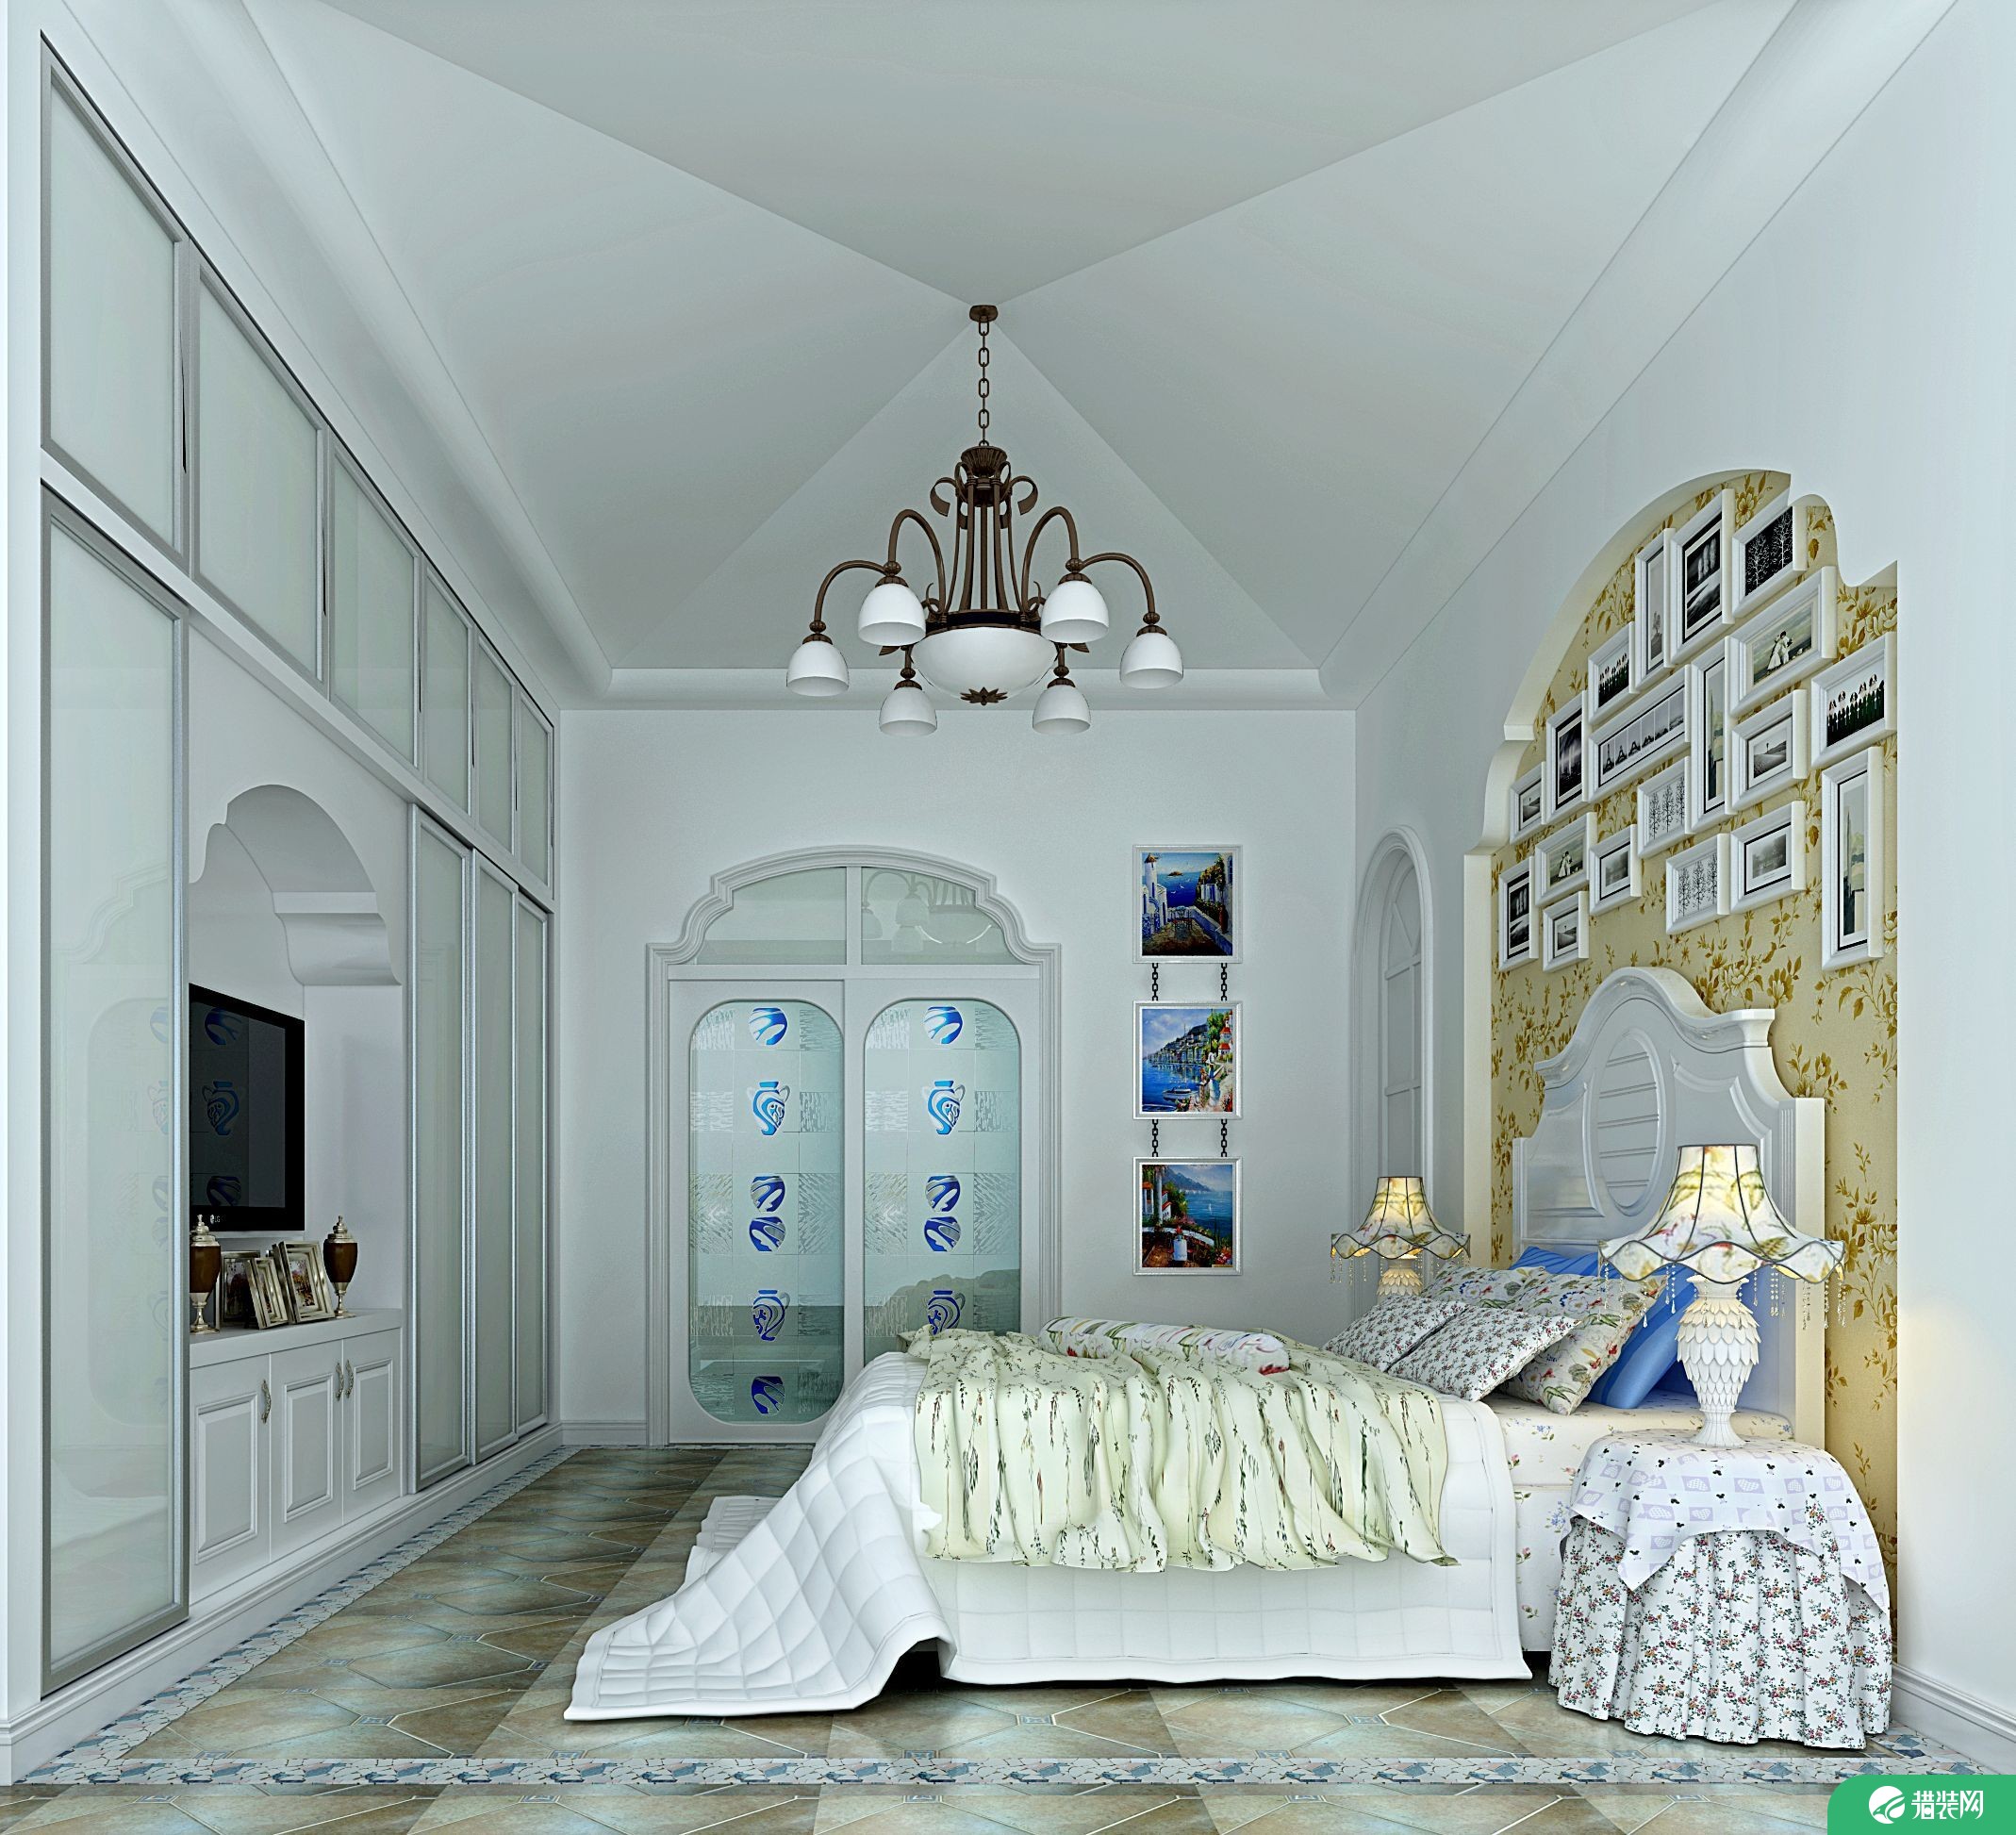 惠州地中海风格两居室装修效果图